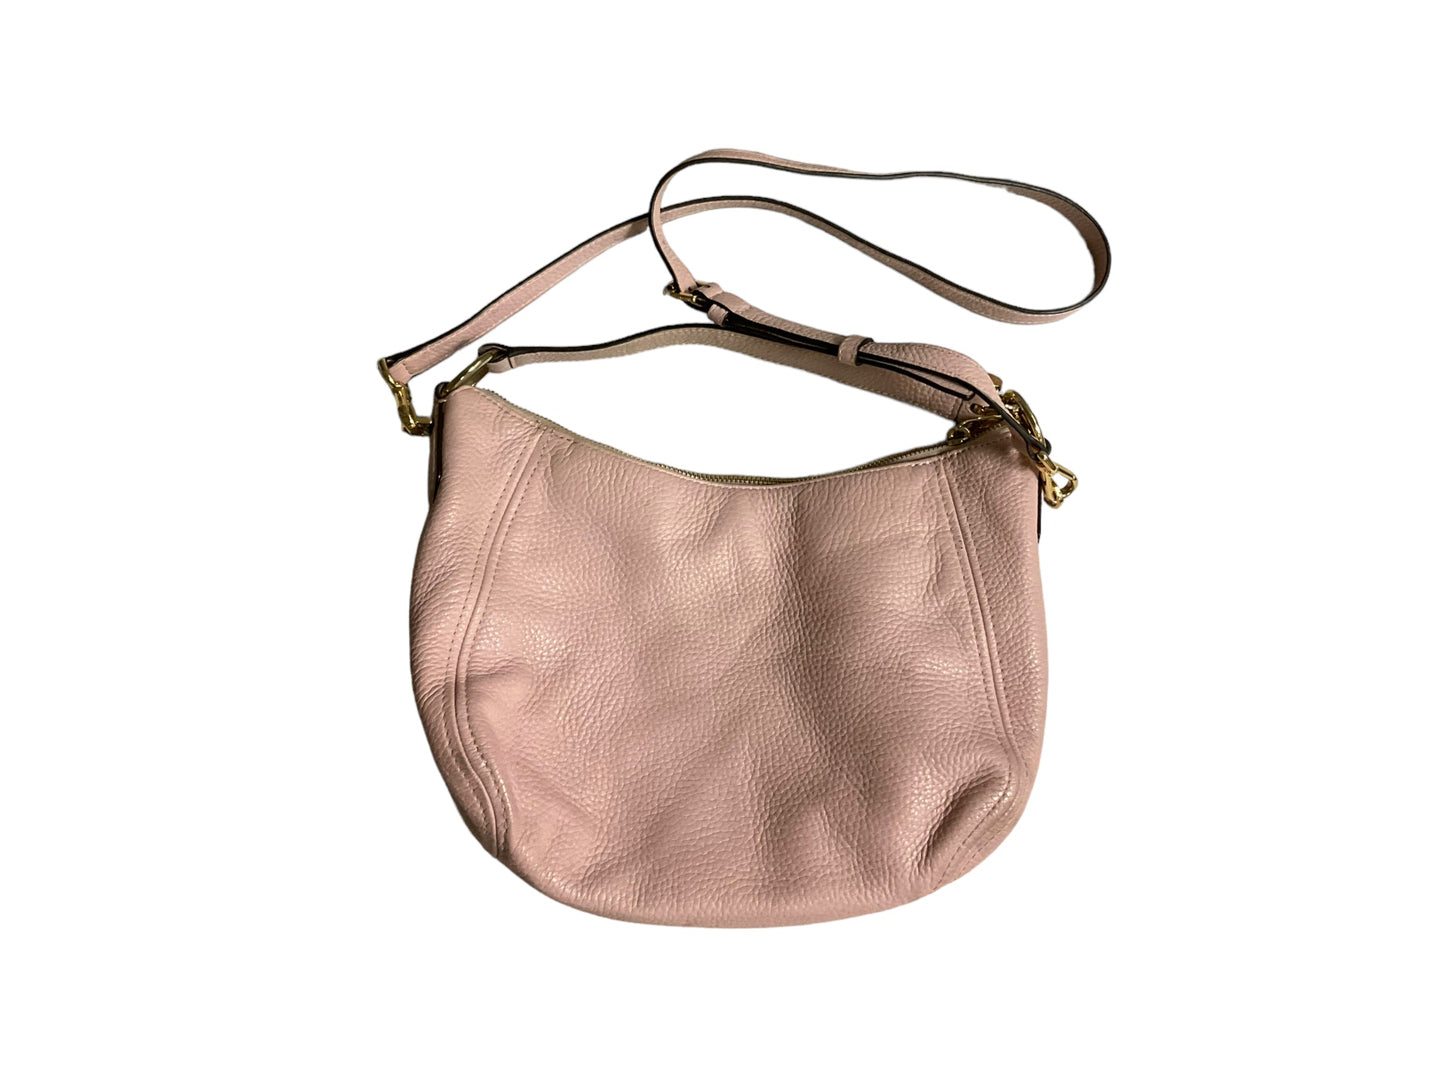 Pink Handbag Designer Michael Kors, Size Large